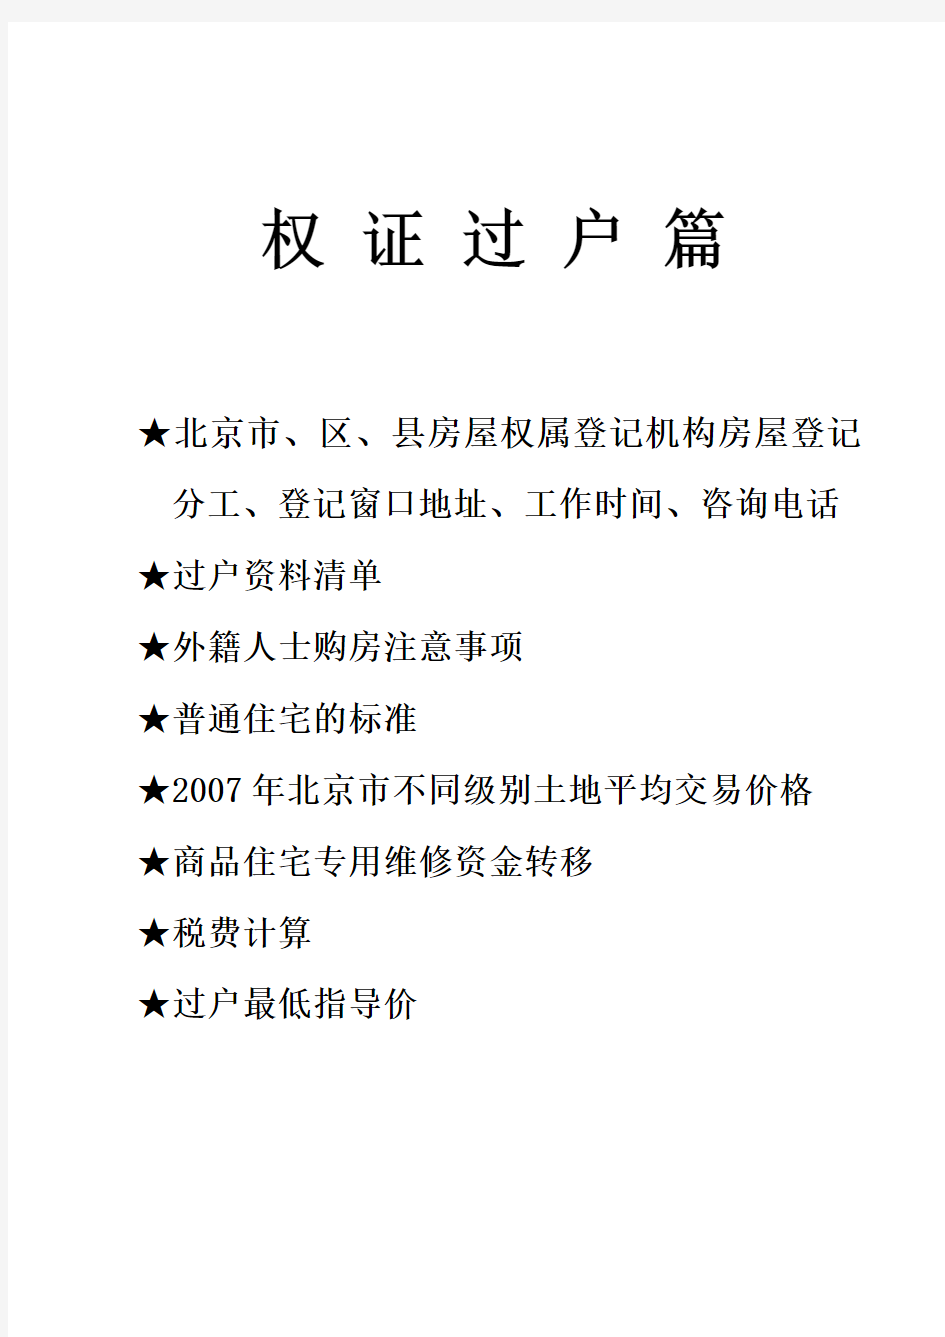 北京市权证过户及按揭业务指导手册